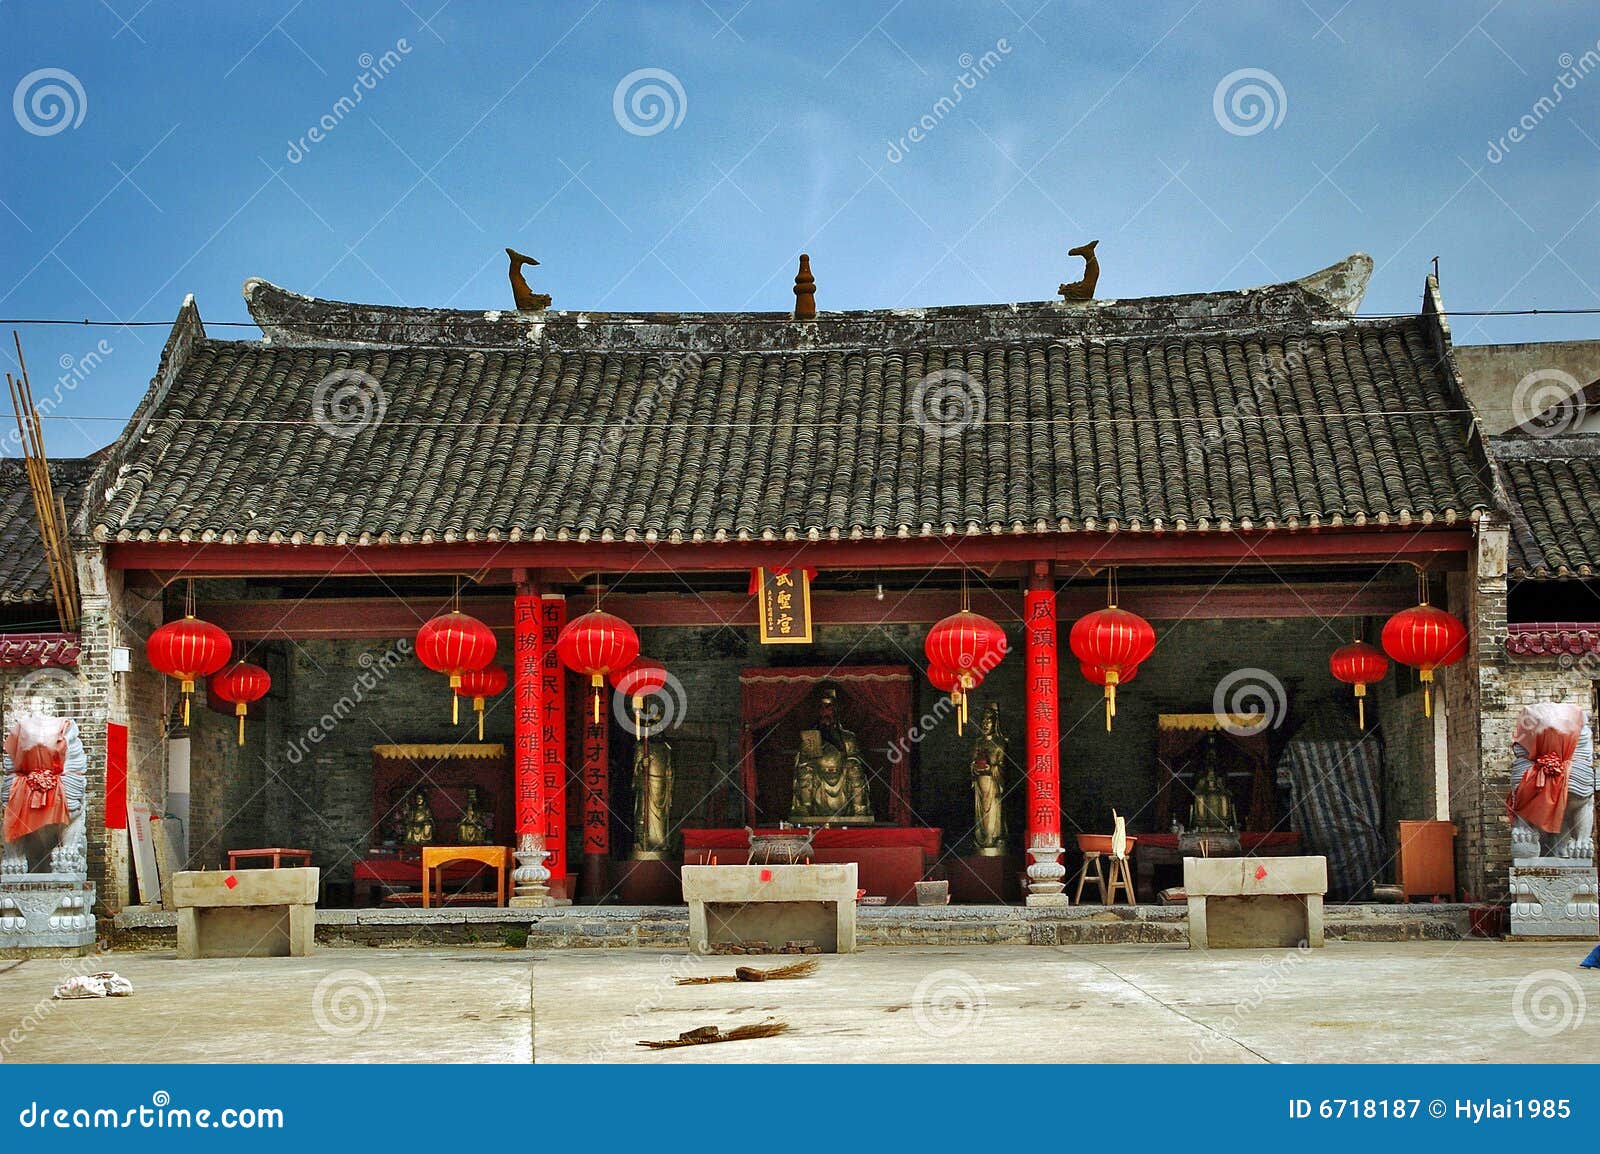 photographie stock libre de droits vieille maison chinoise image